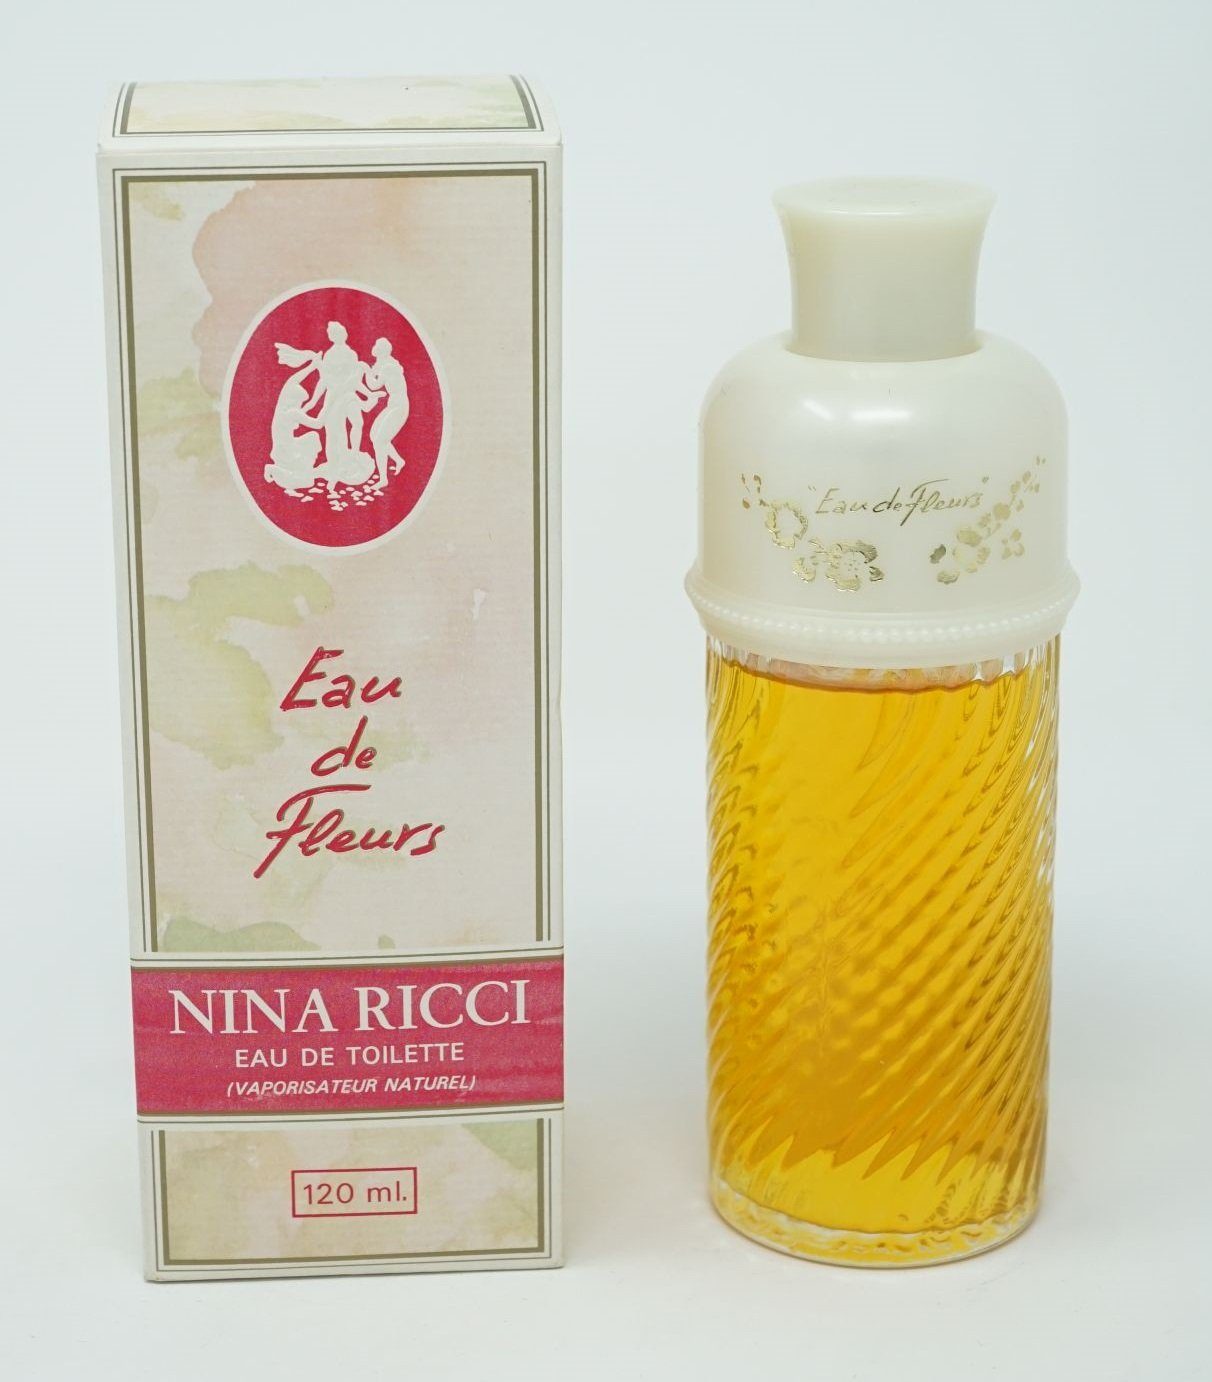 Nina Ricci Eau de Toilette Nina Ricci Eau de Fleurs Eau de Toilette spray 120ml | Eau de Toilette